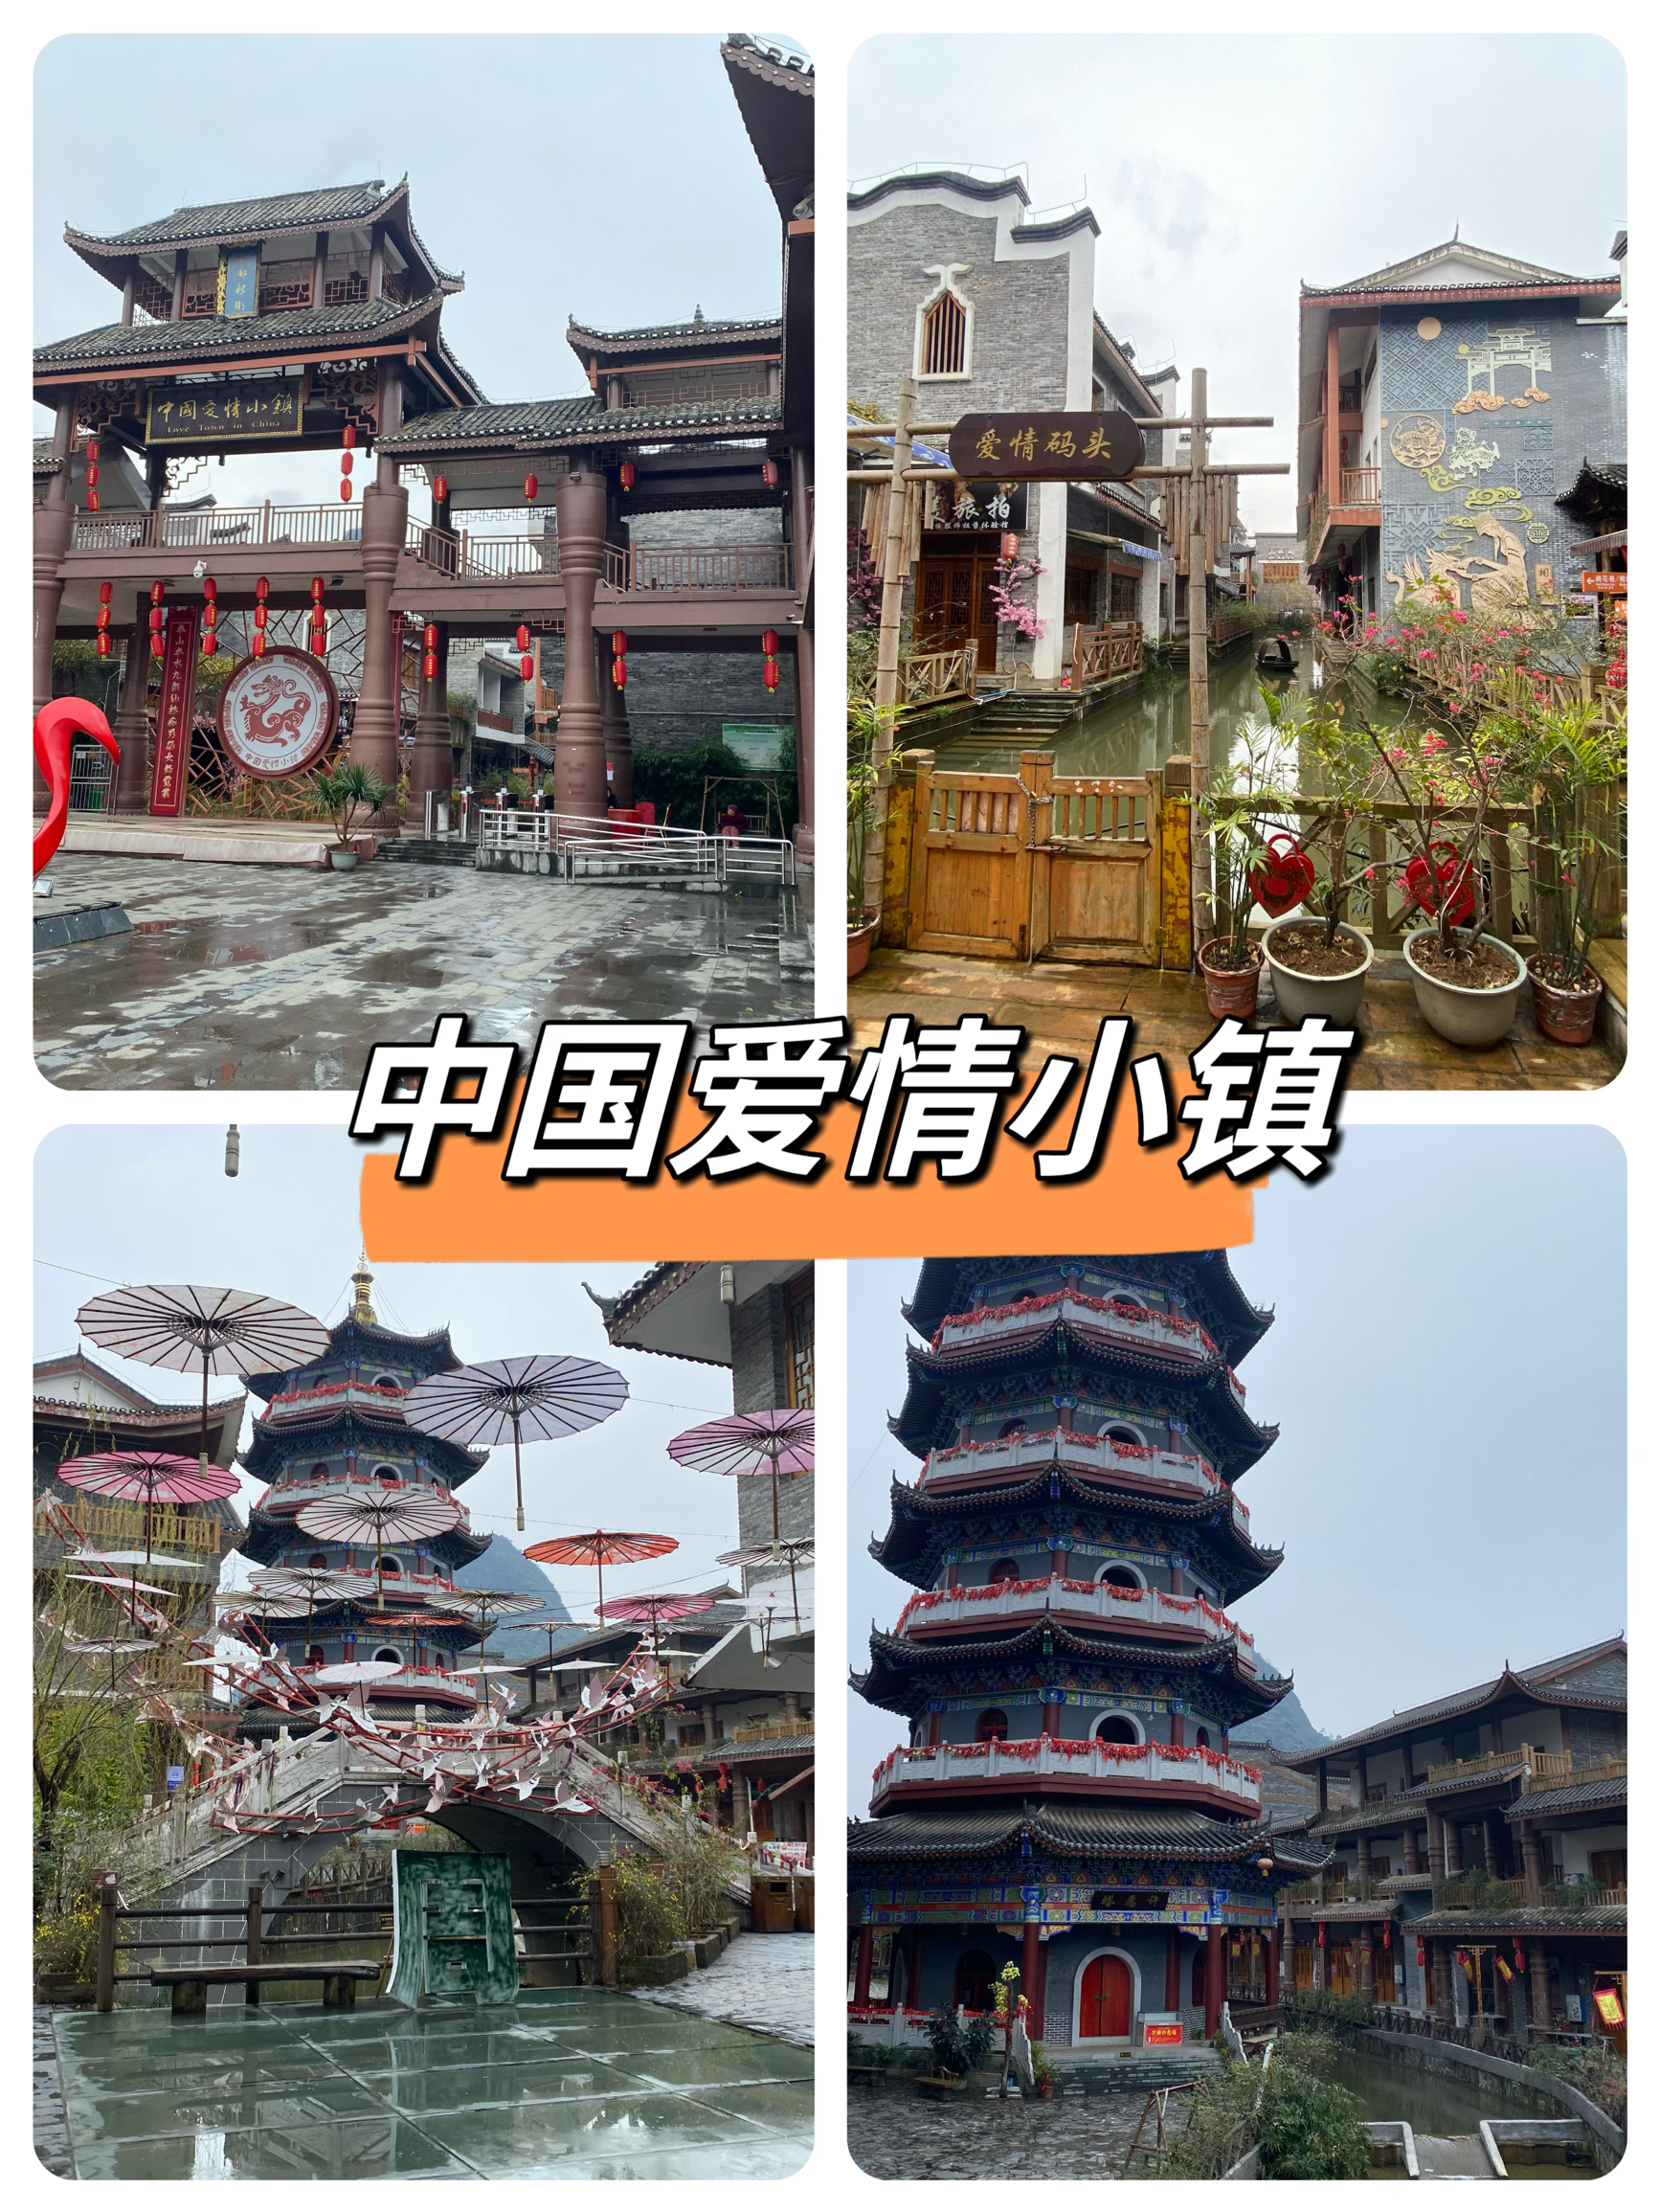 中国爱情小镇旅游游记，有点坑